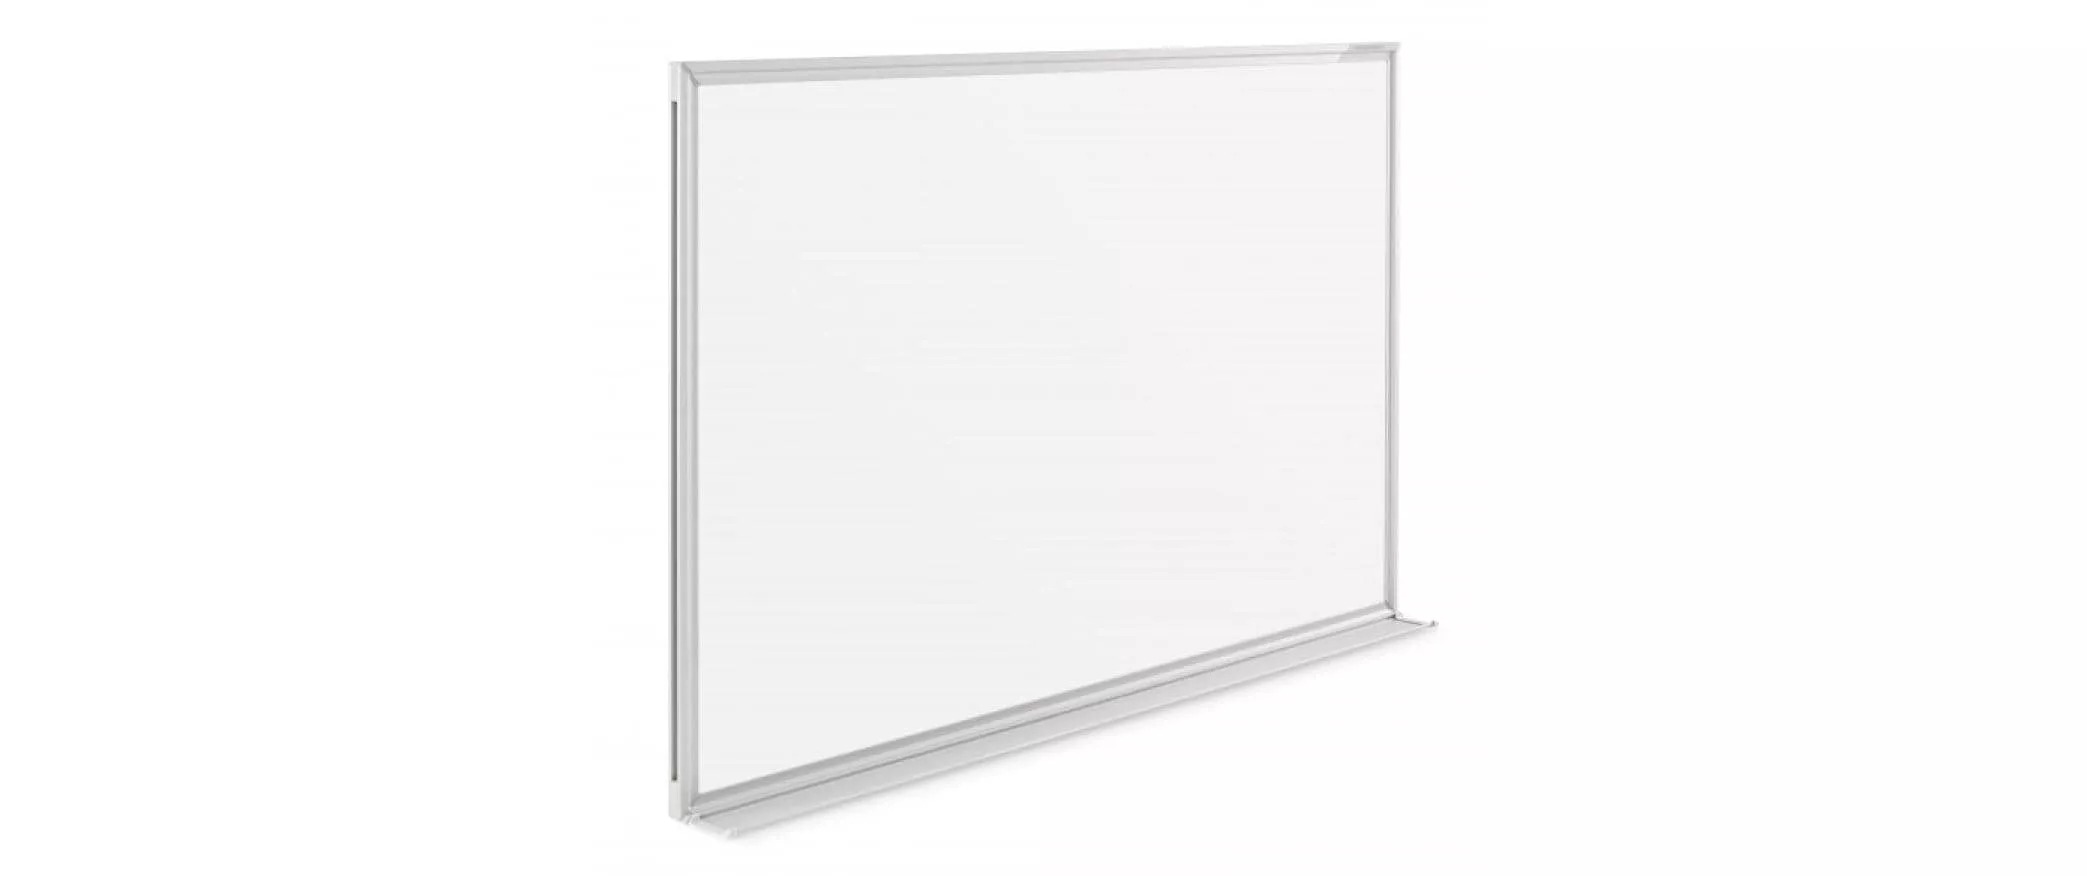 Whiteboard Design SP 60 x 45 cm Weiss, 1 Stück